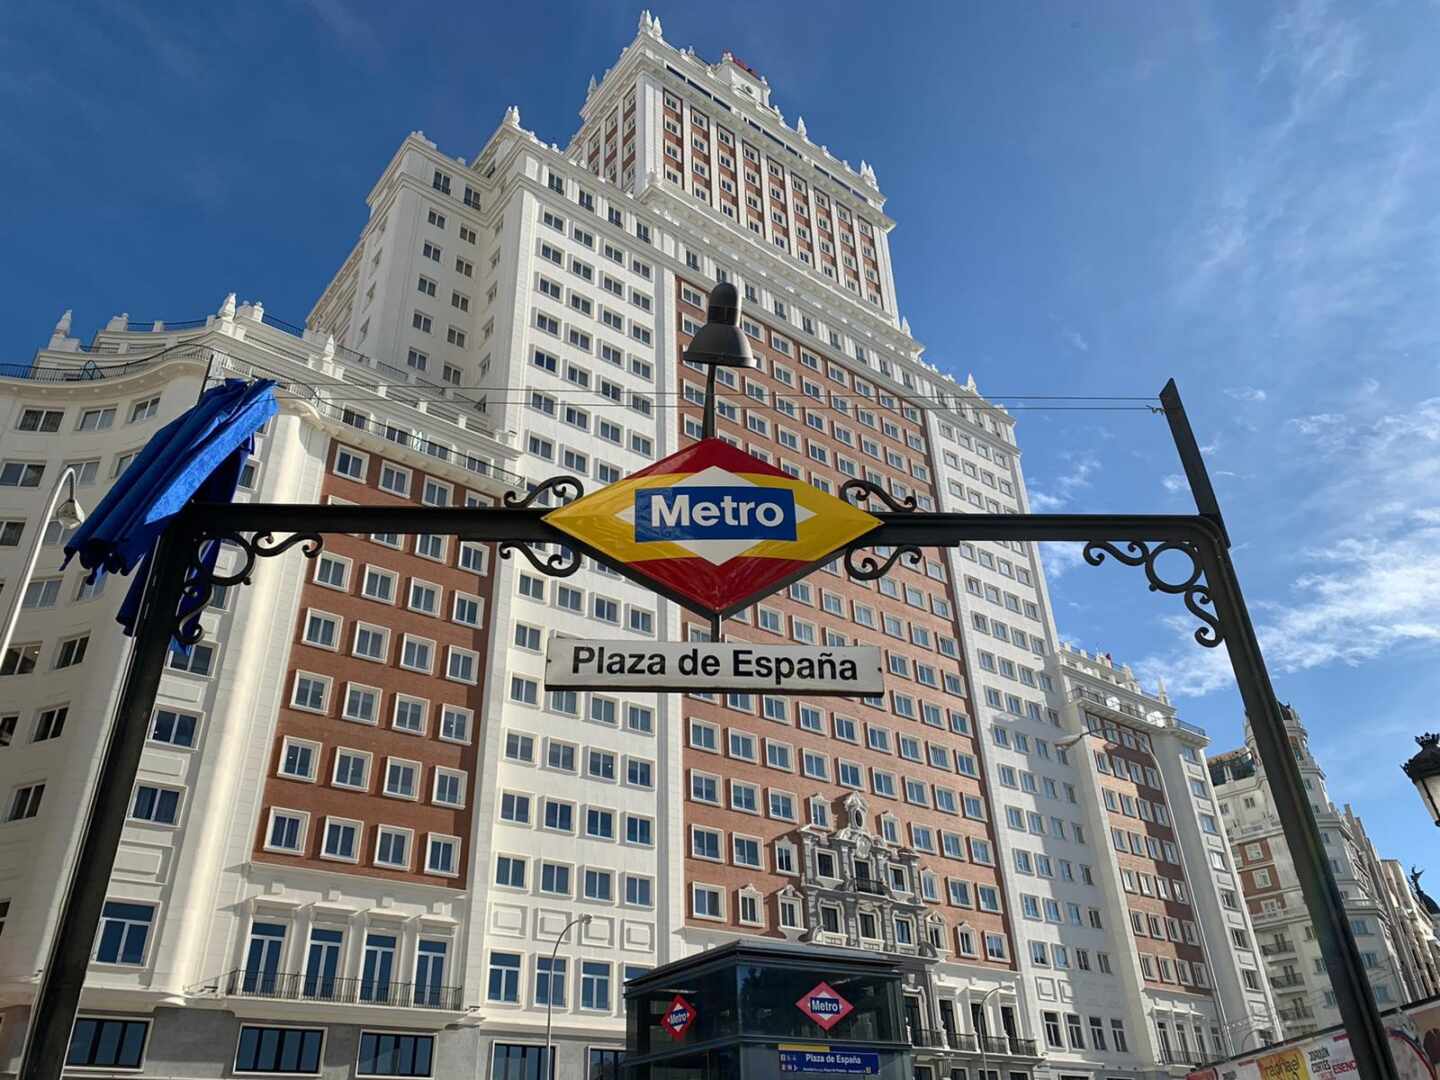 Entrada del Metro de Plaza de España.